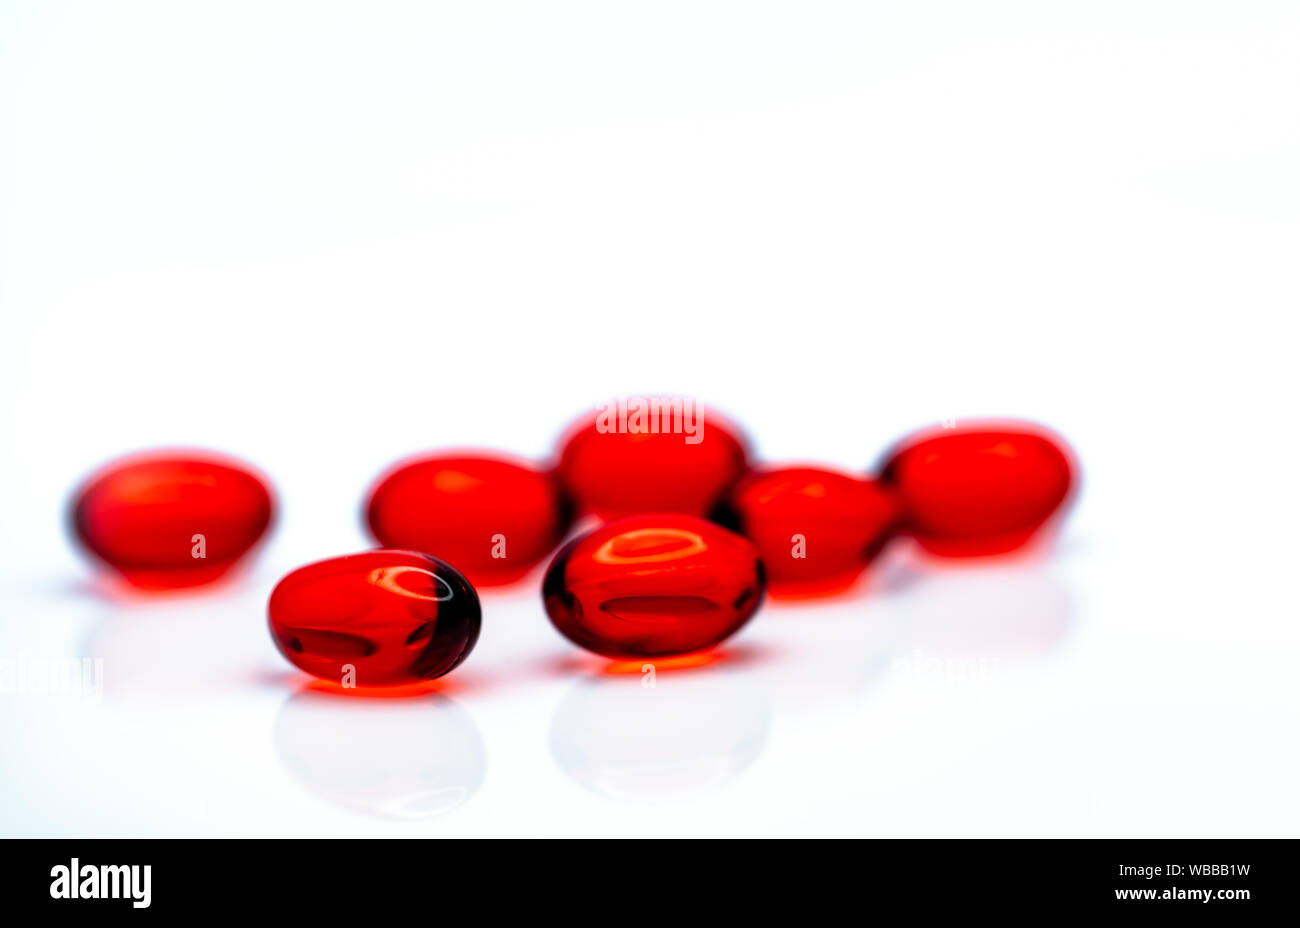 Morbido rosso capsula di gel pillole isolati su sfondo bianco. Pila di red capsule di gelatina morbida. Vitamine e integratori dietetici concetto. Prodotti farmaceutici Foto Stock